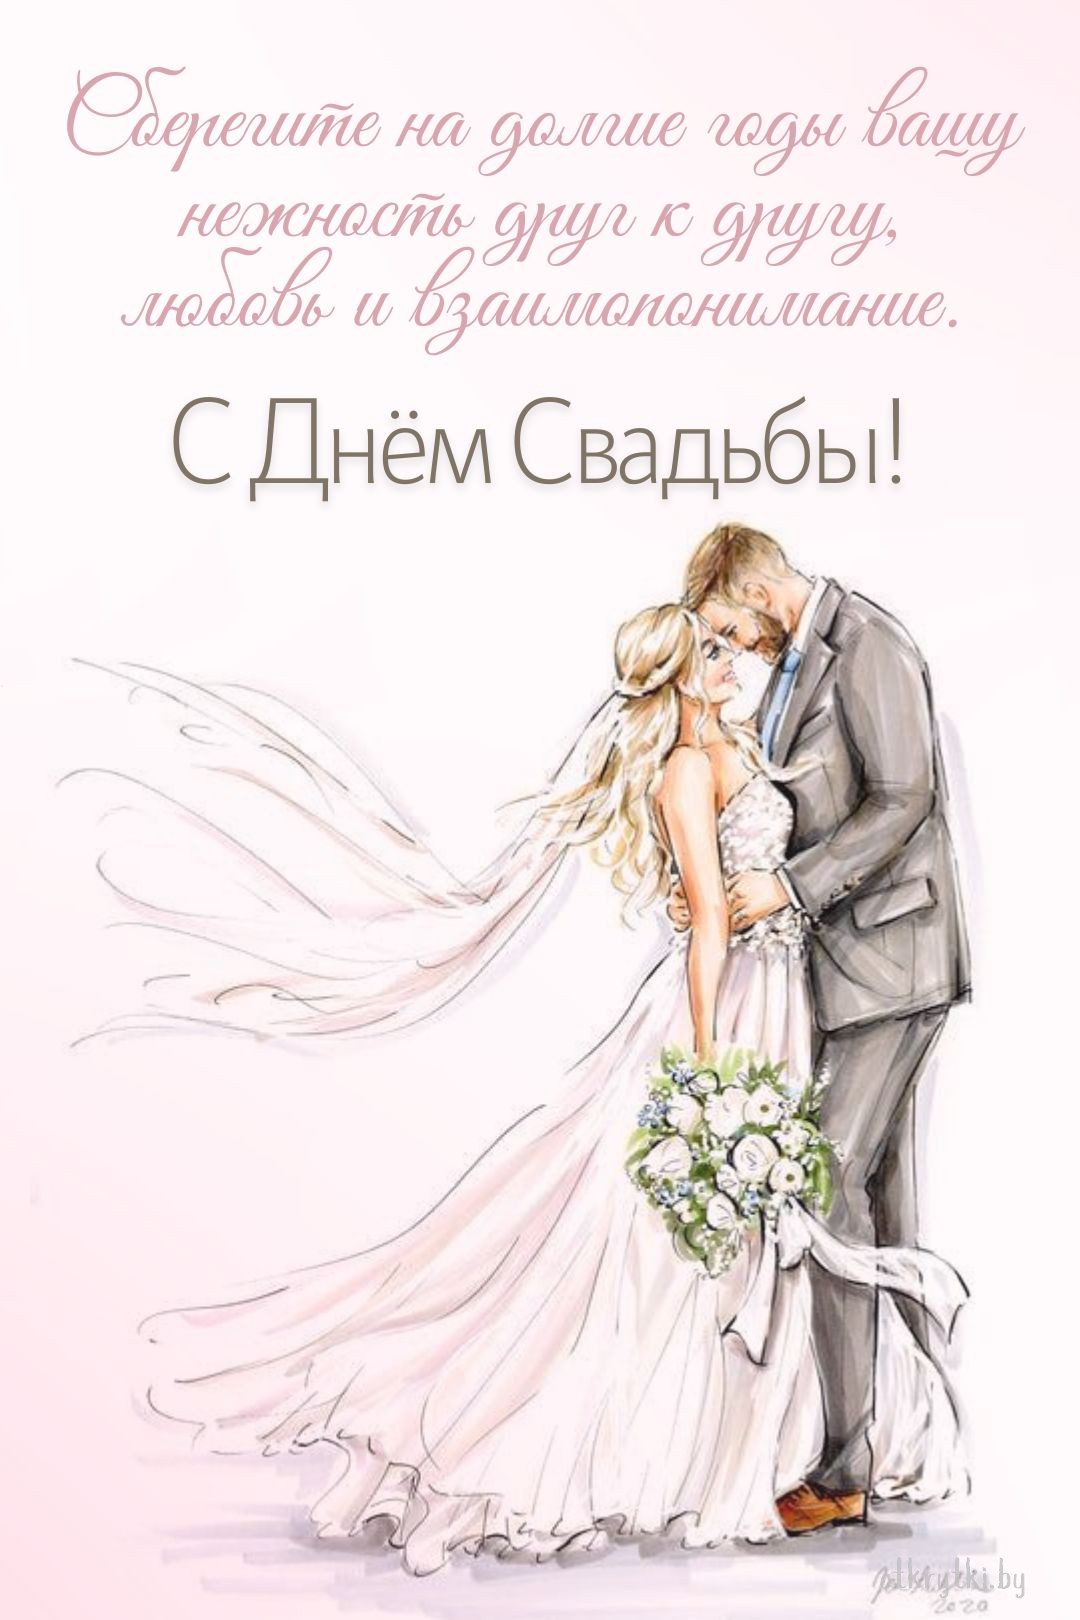 Свадебная открытка с поздравлением в картинке